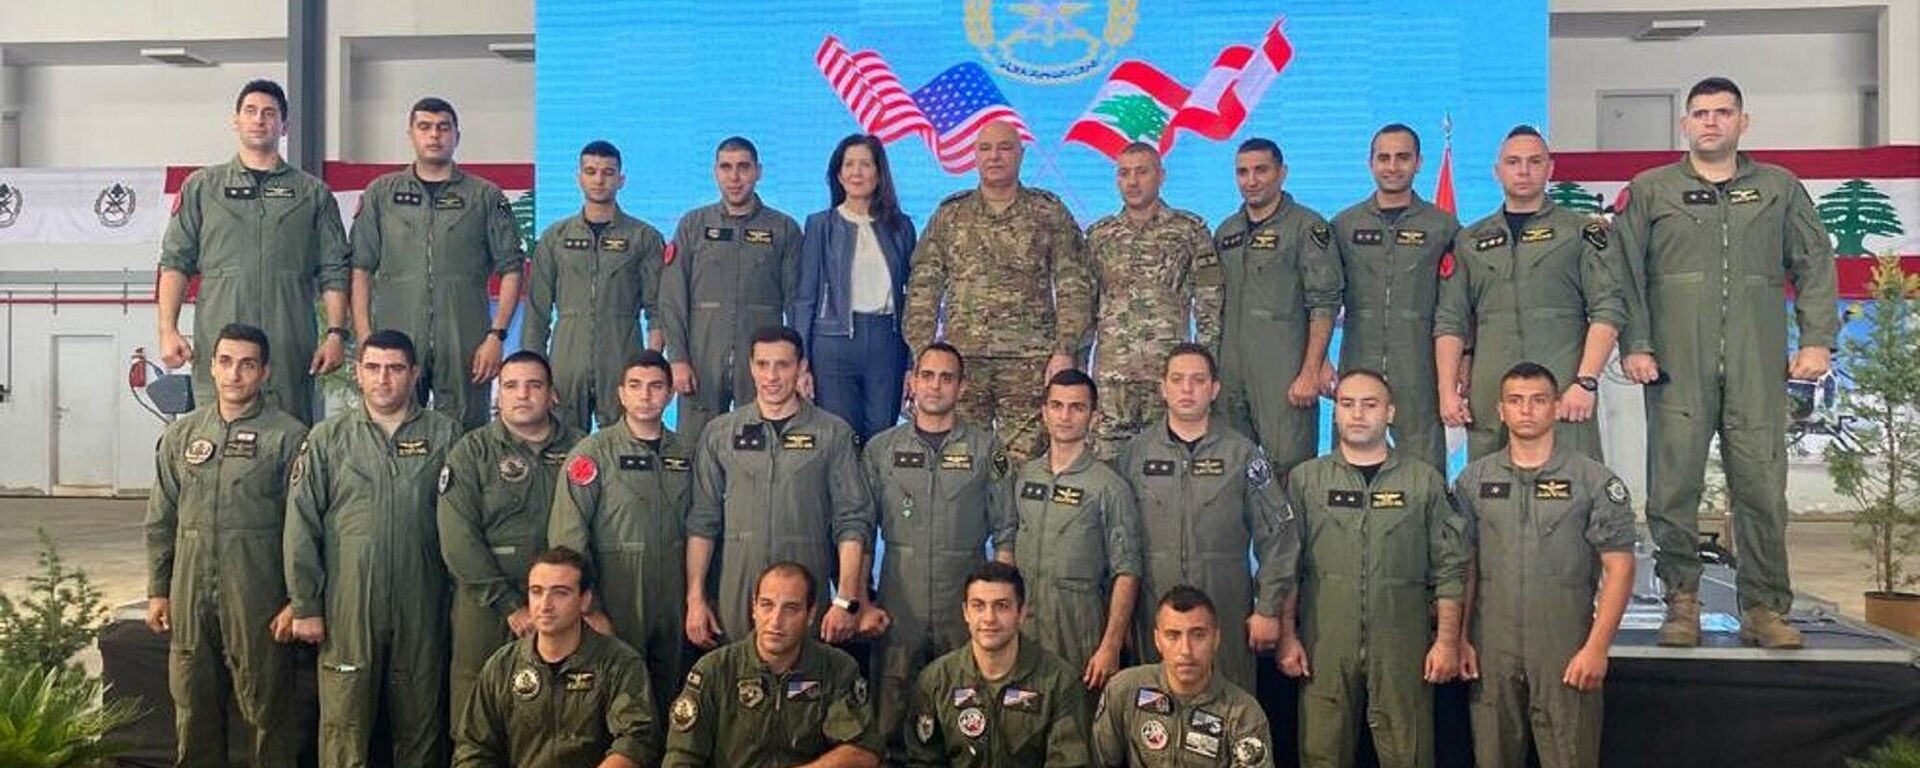 Lübnan ordusu, ABD'den askeri yardım amaçlı hibe edilen 6 askeri helikopteri düzenlenen törenle teslim adı. - Sputnik Türkiye, 1920, 17.11.2021